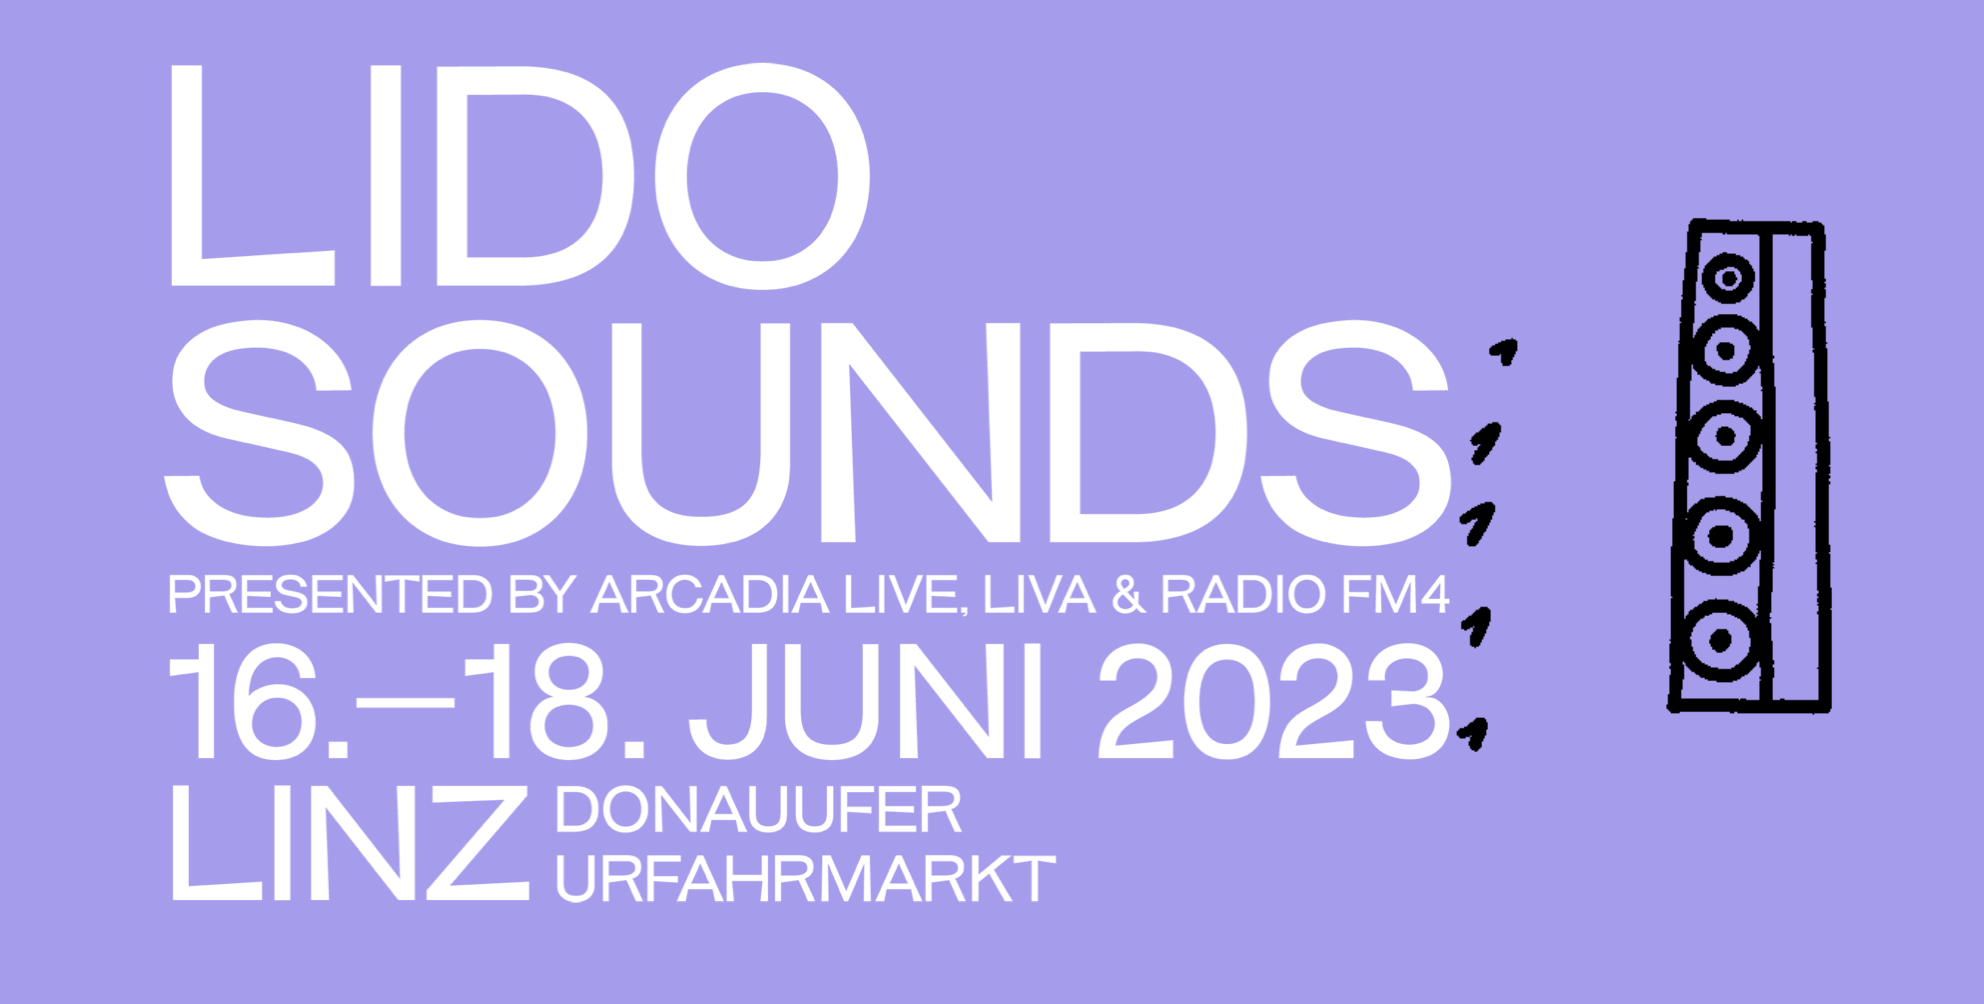 LIDO SOUNDS am 16. June 2023 @ LIDO SOUNDS.